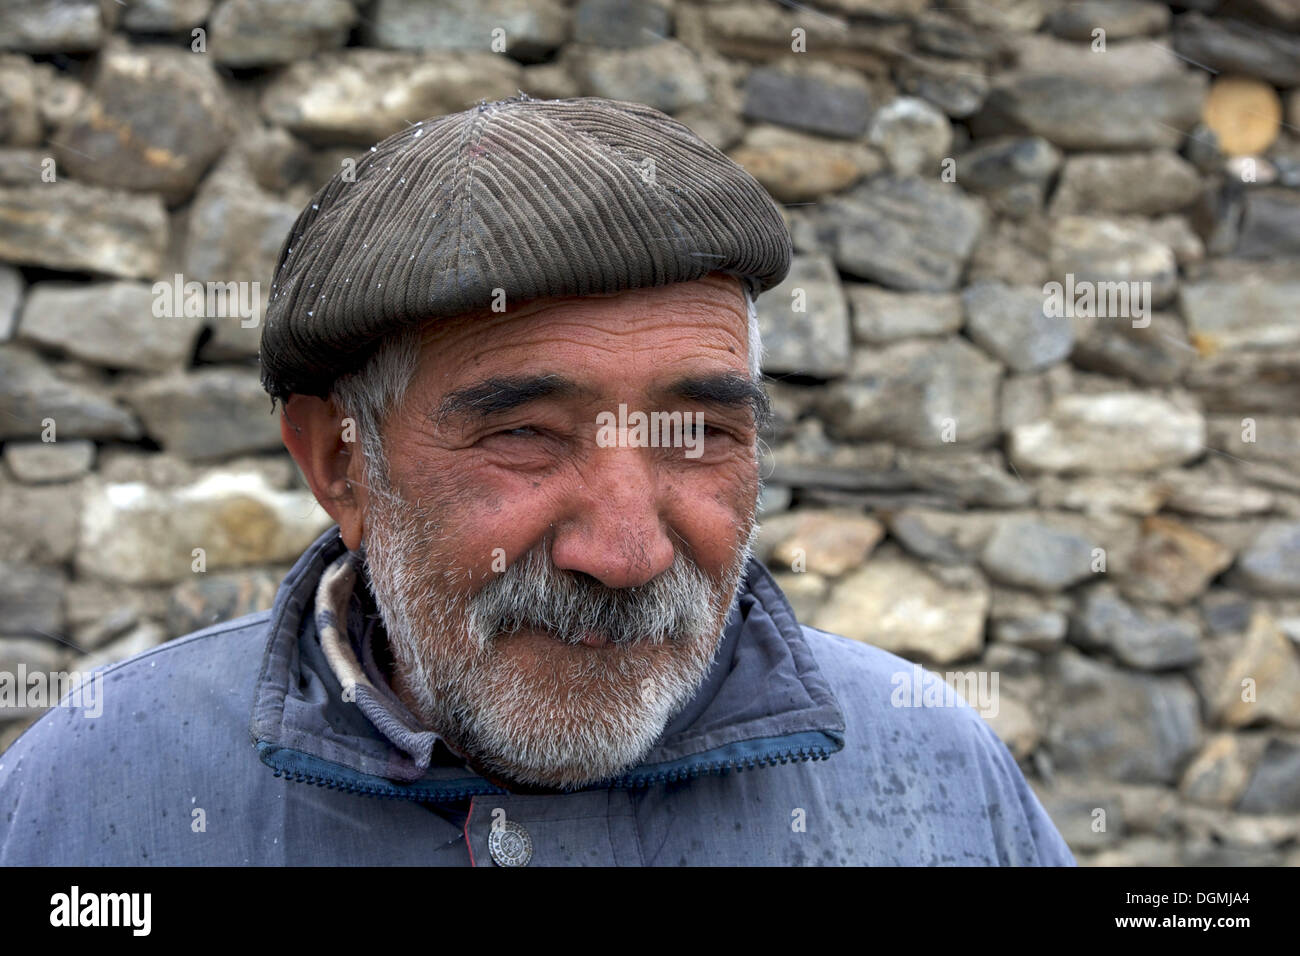 Kirghiz man, portrait, Pamir region, Tajikistan, Central Asia, Asia Stock Photo